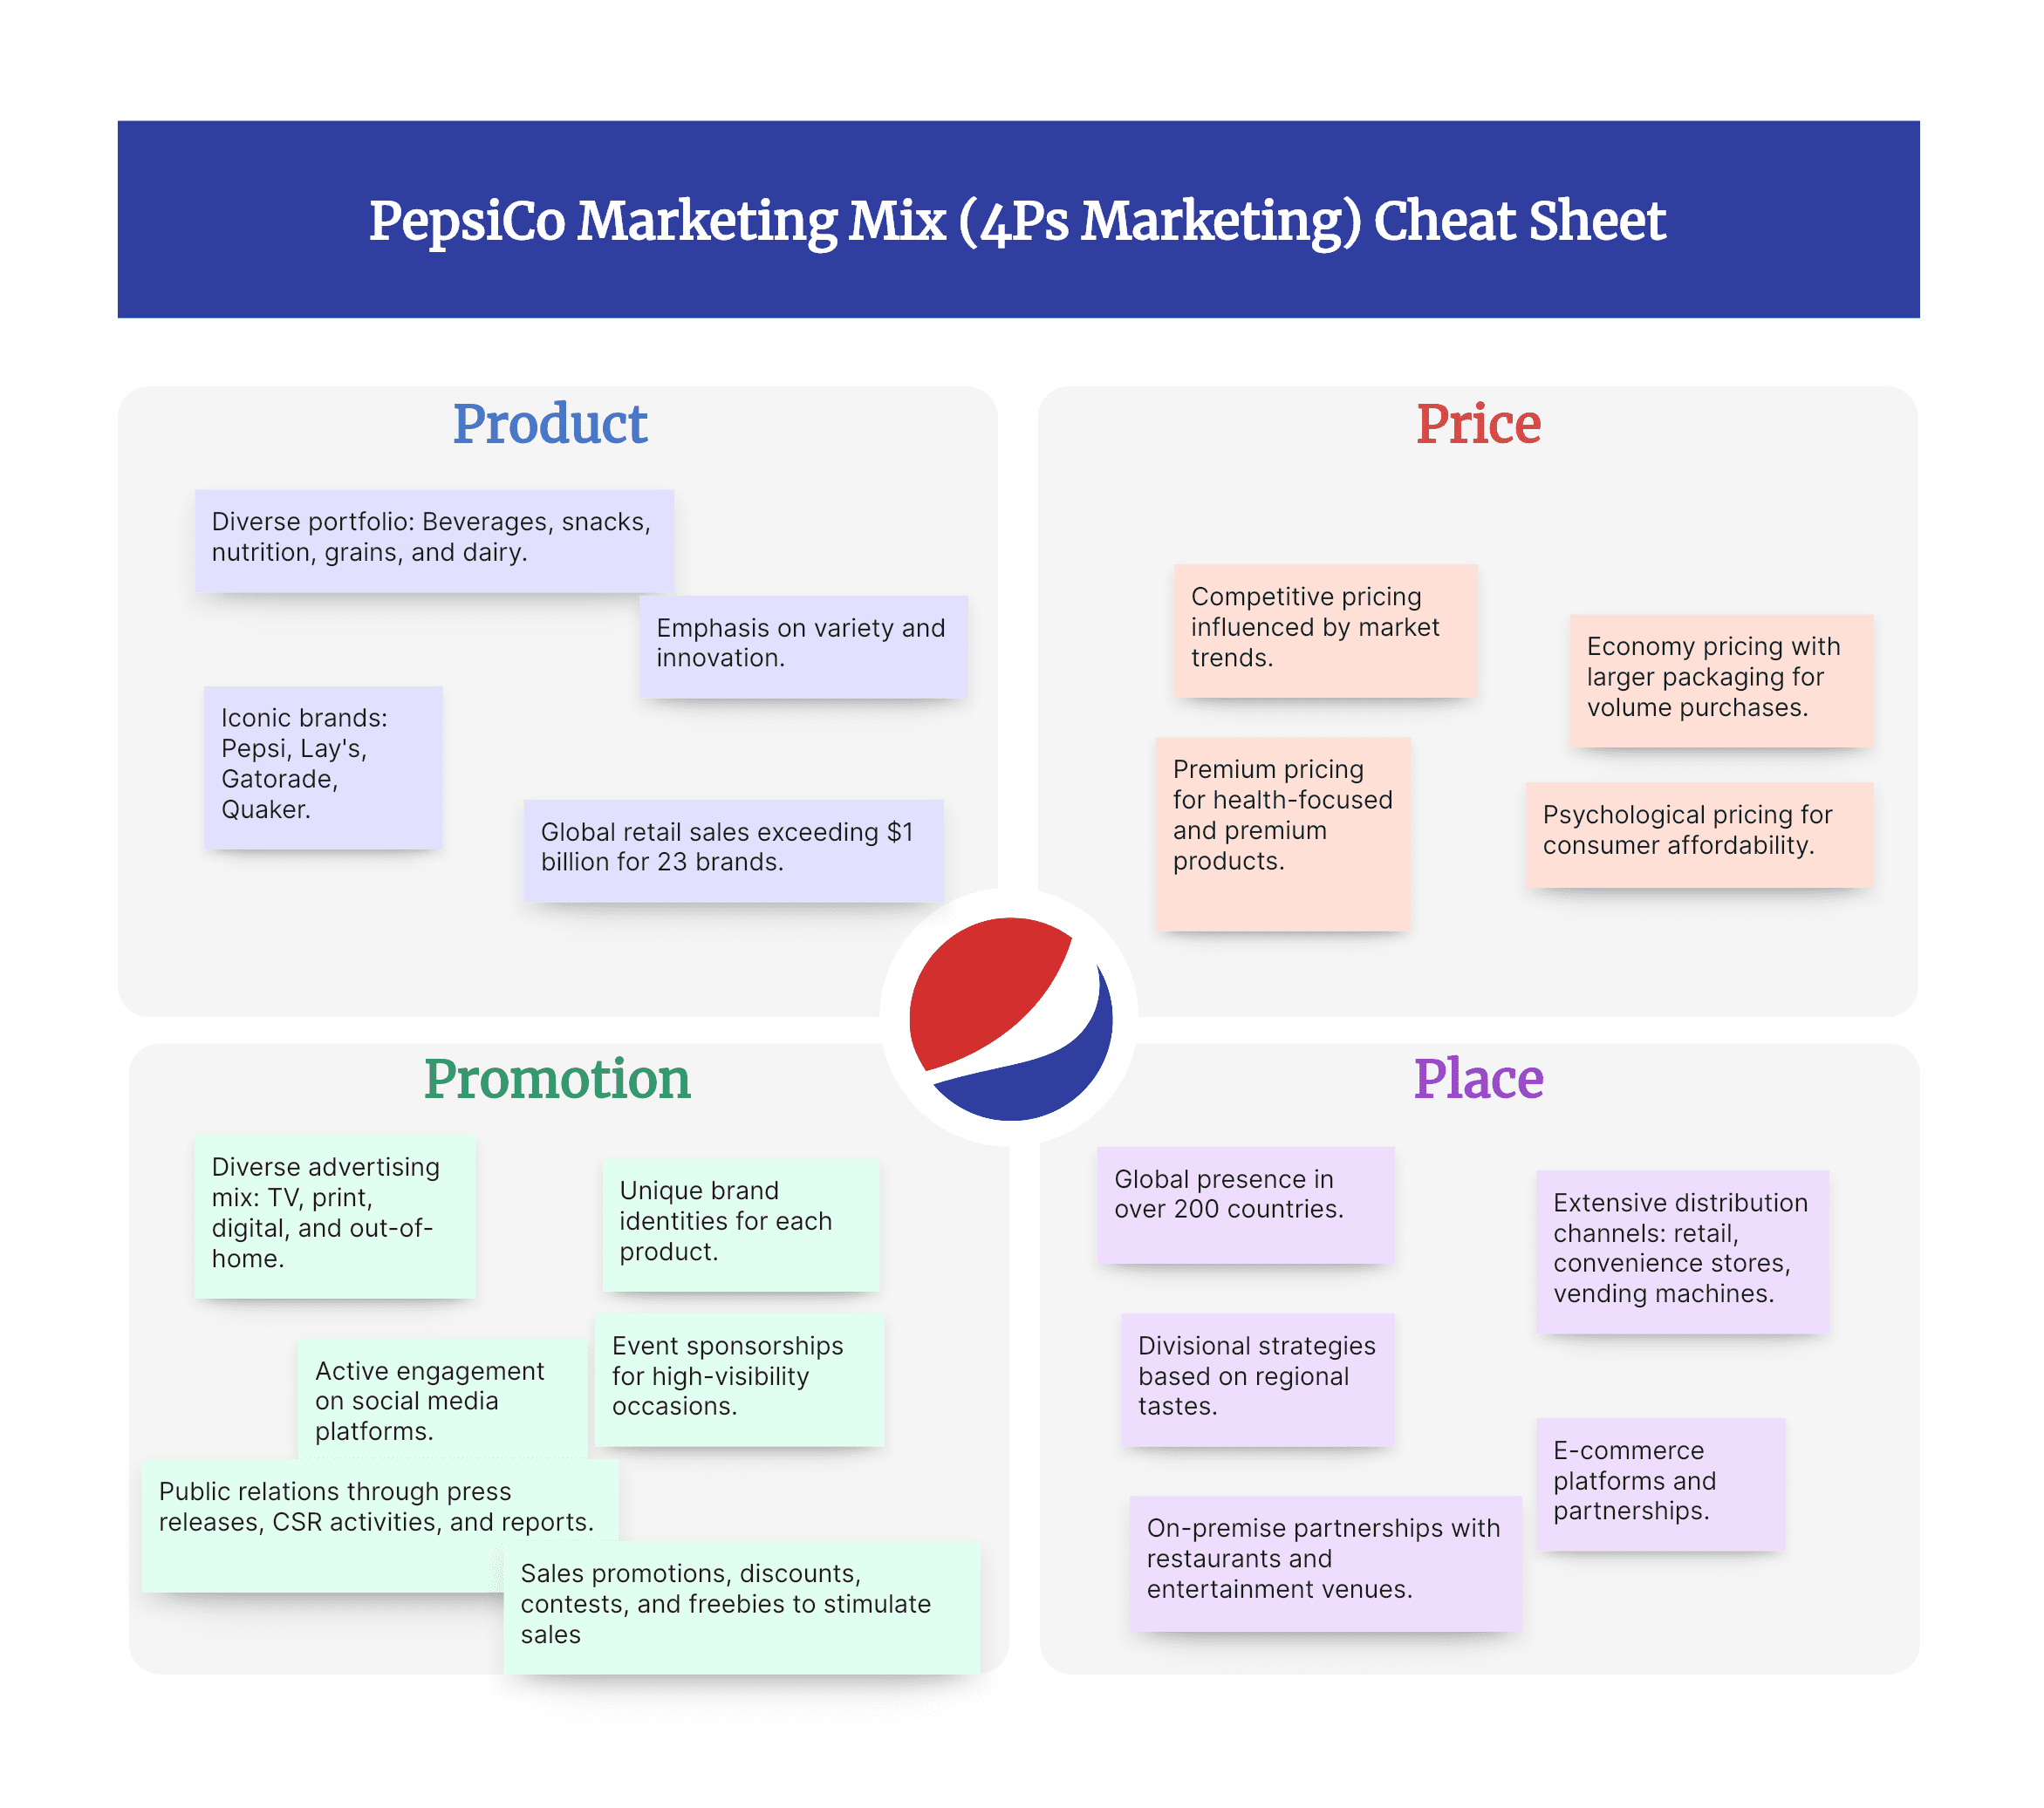 PepsiCo Marketing Mix (4Ps) Analysis Cheat Sheet